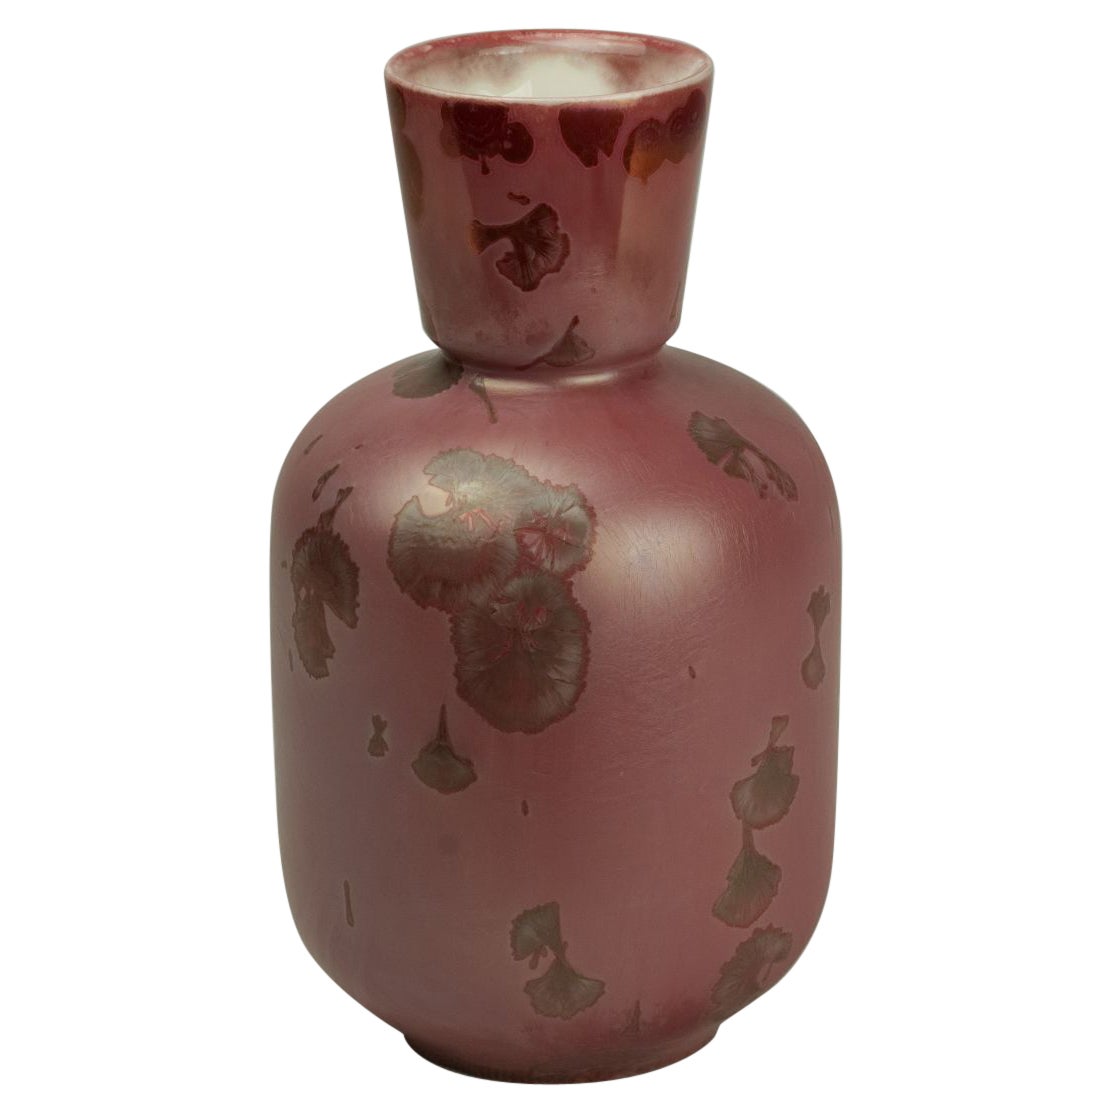 Becher-Vase von Milan Pekař